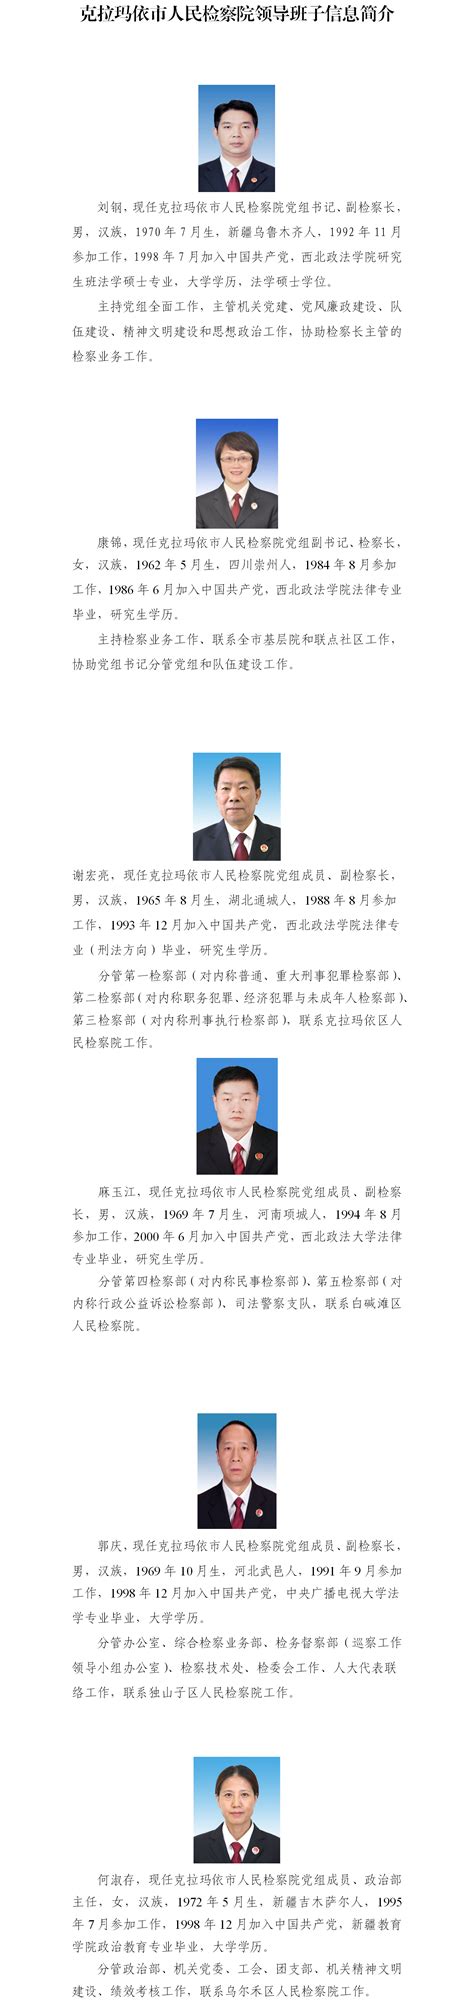 学院召开新一届行政领导班子任职宣布大会-武汉大学国家网络安全学院